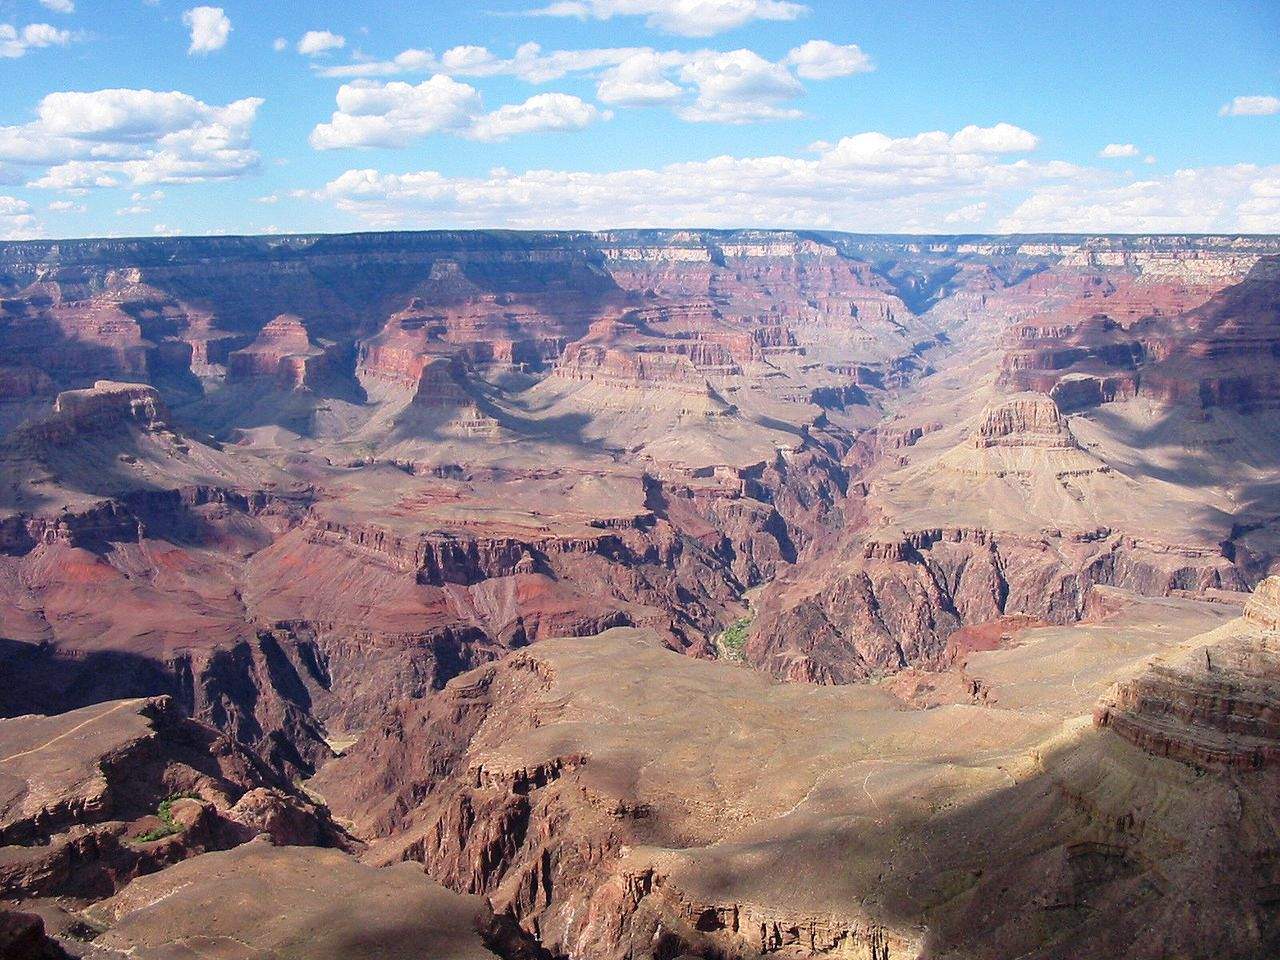 Reviving uranium mining at the Grand Canyon